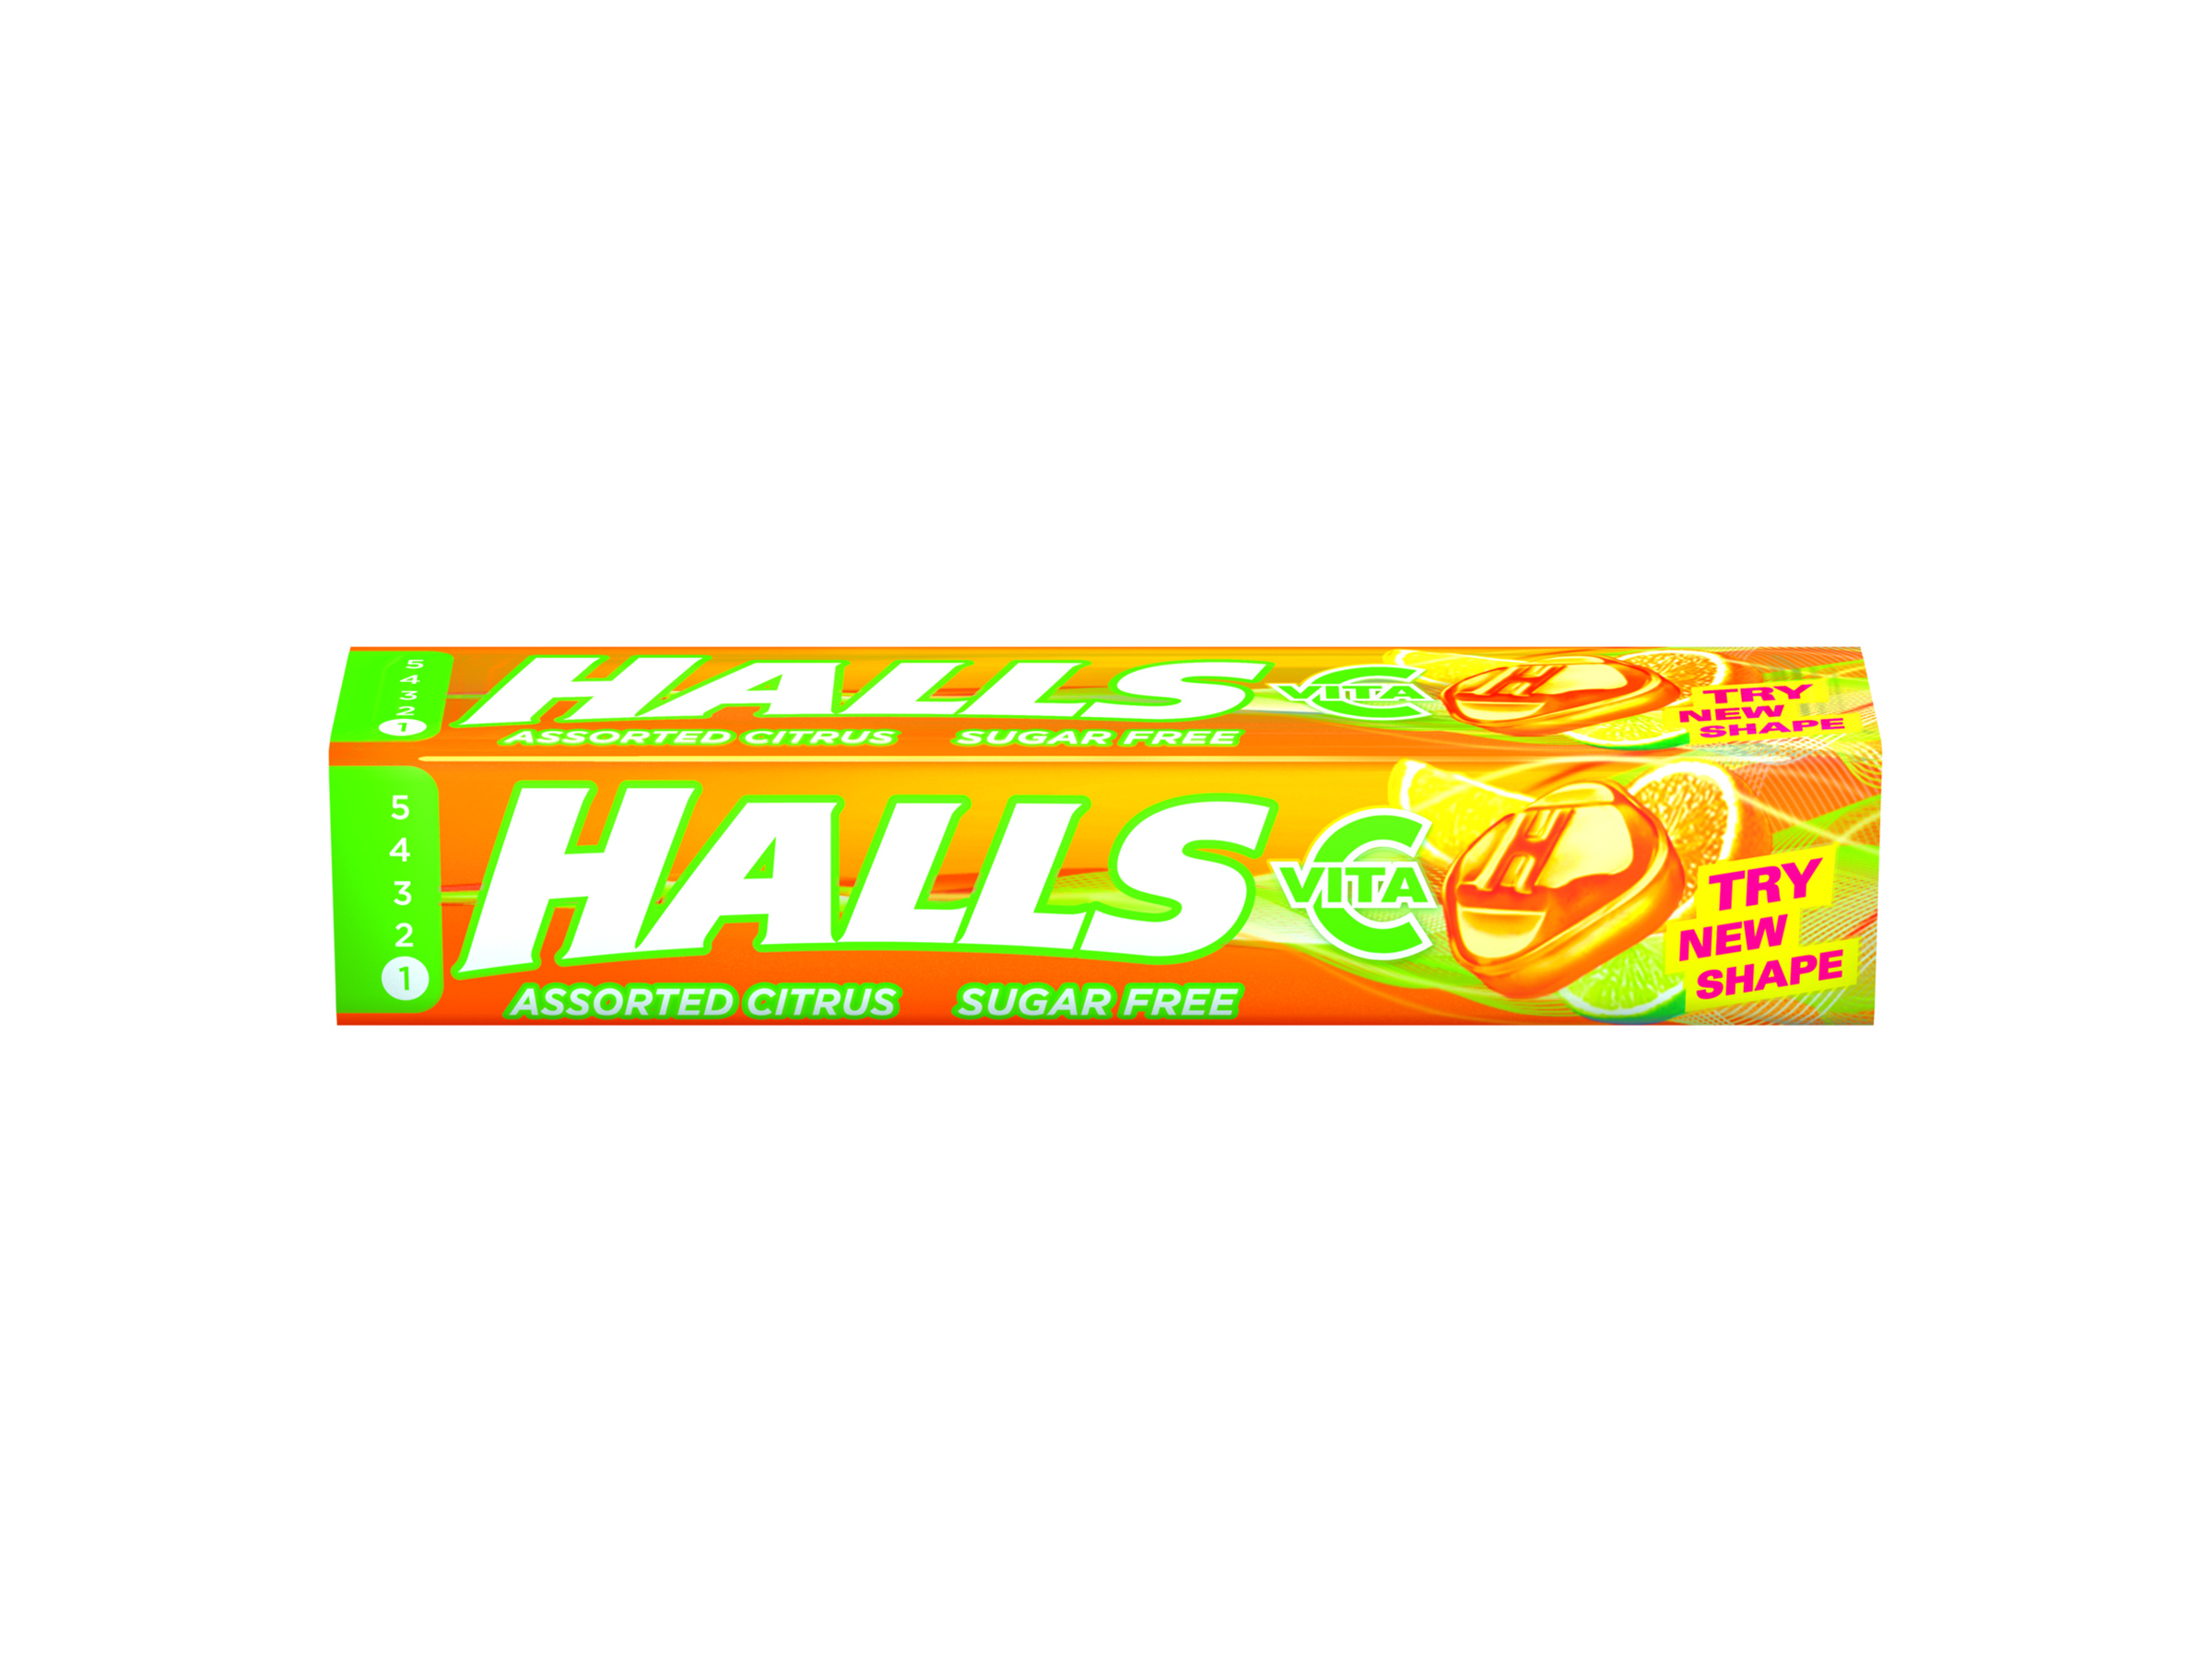 Halls Vita C Assorted Citrus, 32 gram